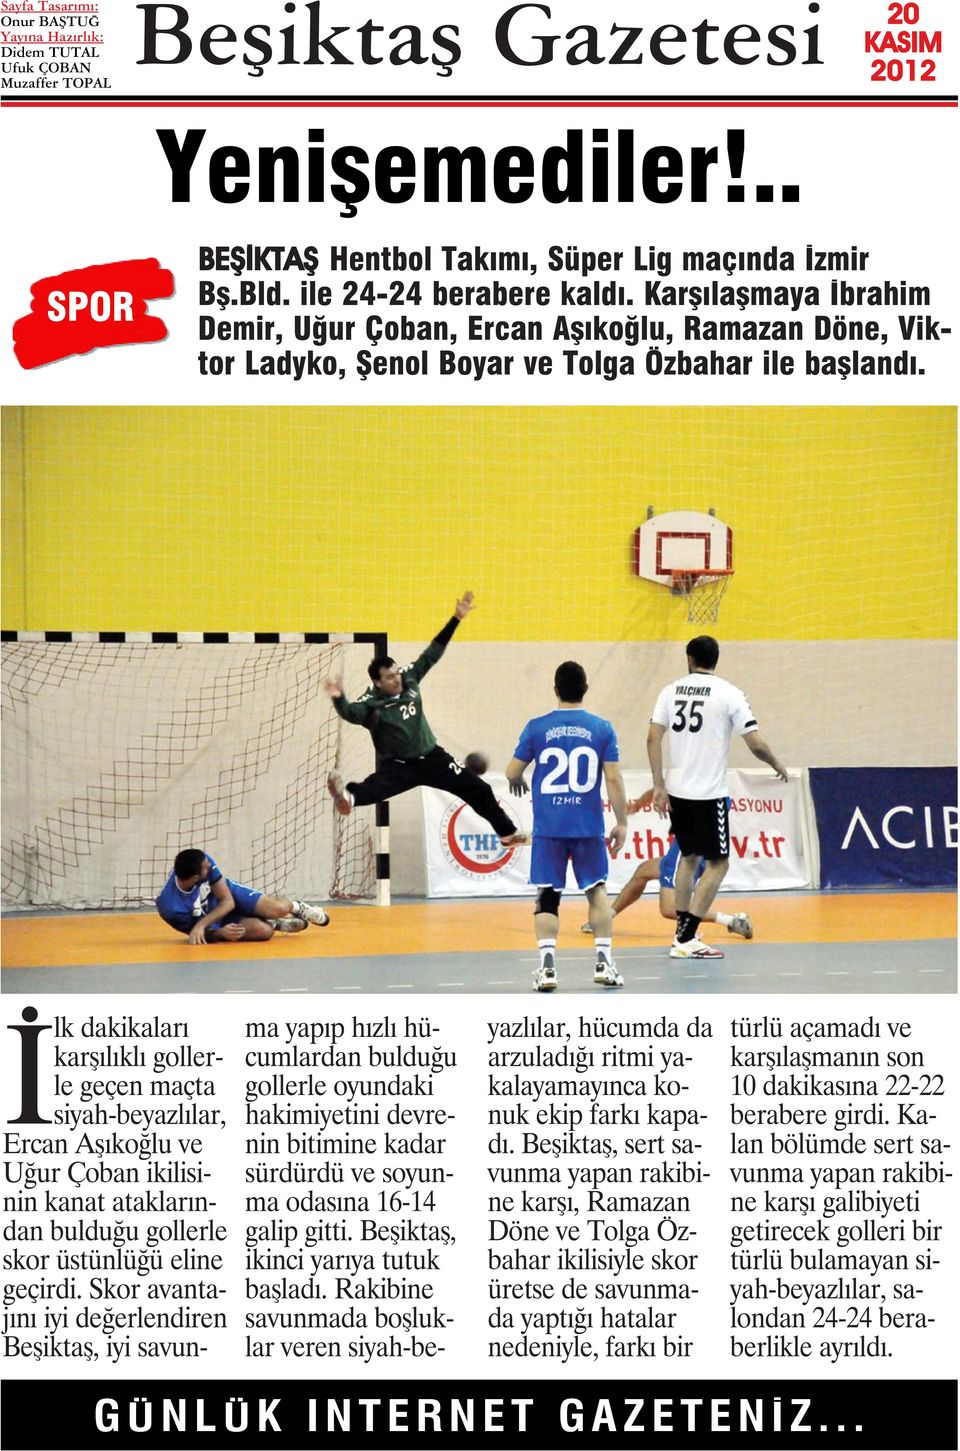 İlk dakikaları karşılıklı gollerle geçen maçta siyah-beyazlılar, Ercan Aşıkoğlu ve Uğur Çoban ikilisinin kanat ataklarından bulduğu gollerle skor üstünlüğü eline geçirdi.